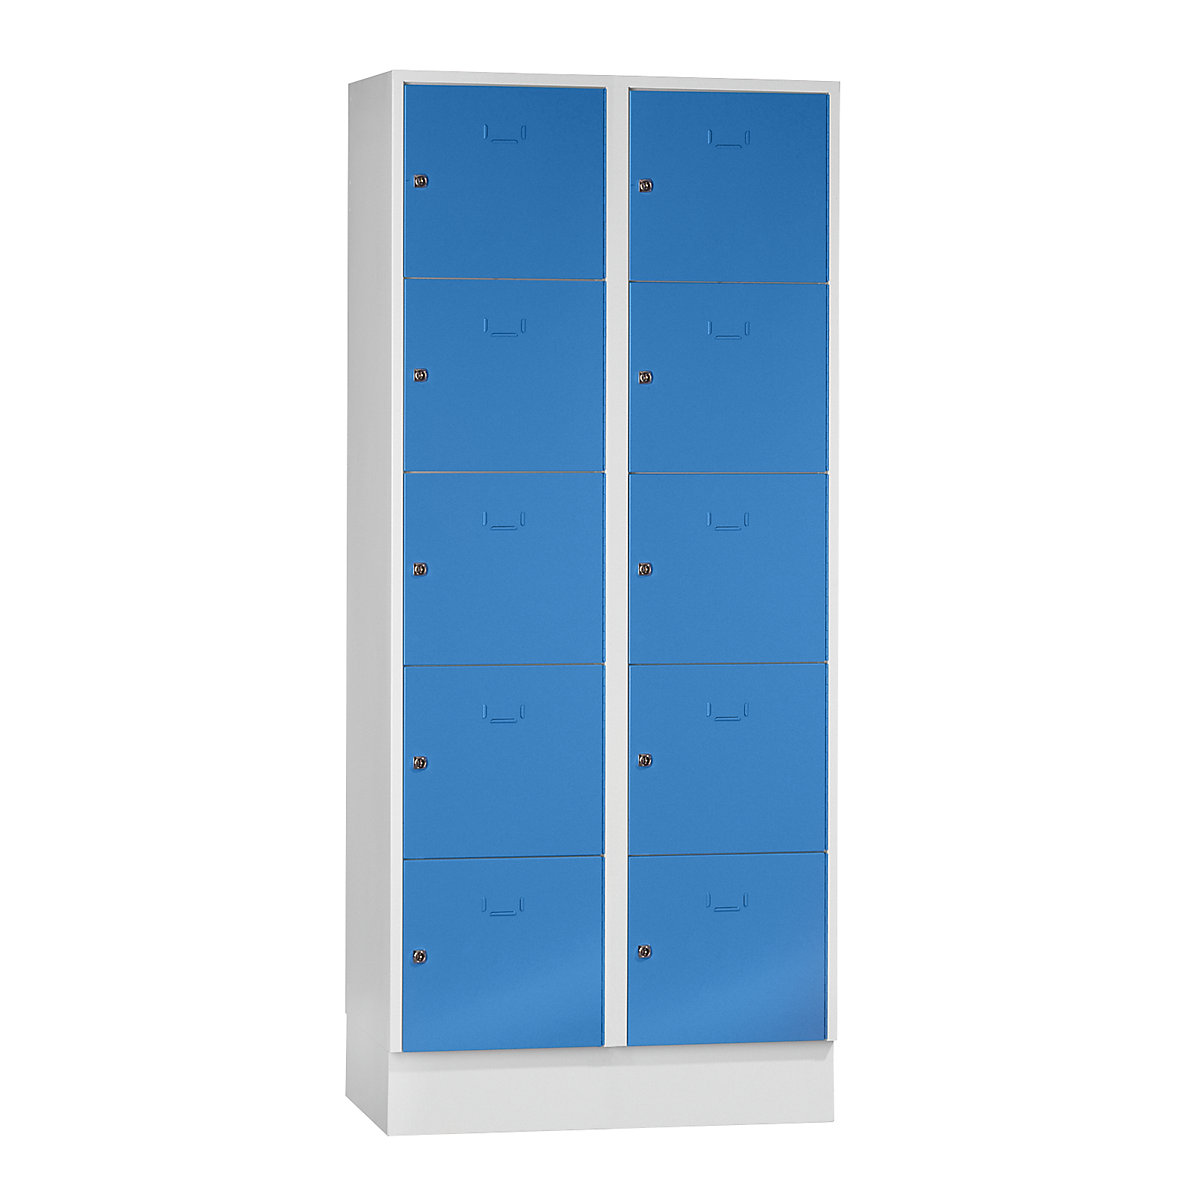 Vestiaire modulaire à casiers verrouillables – Wolf, 10 casiers, largeur 400 mm, bleu clair / gris clair